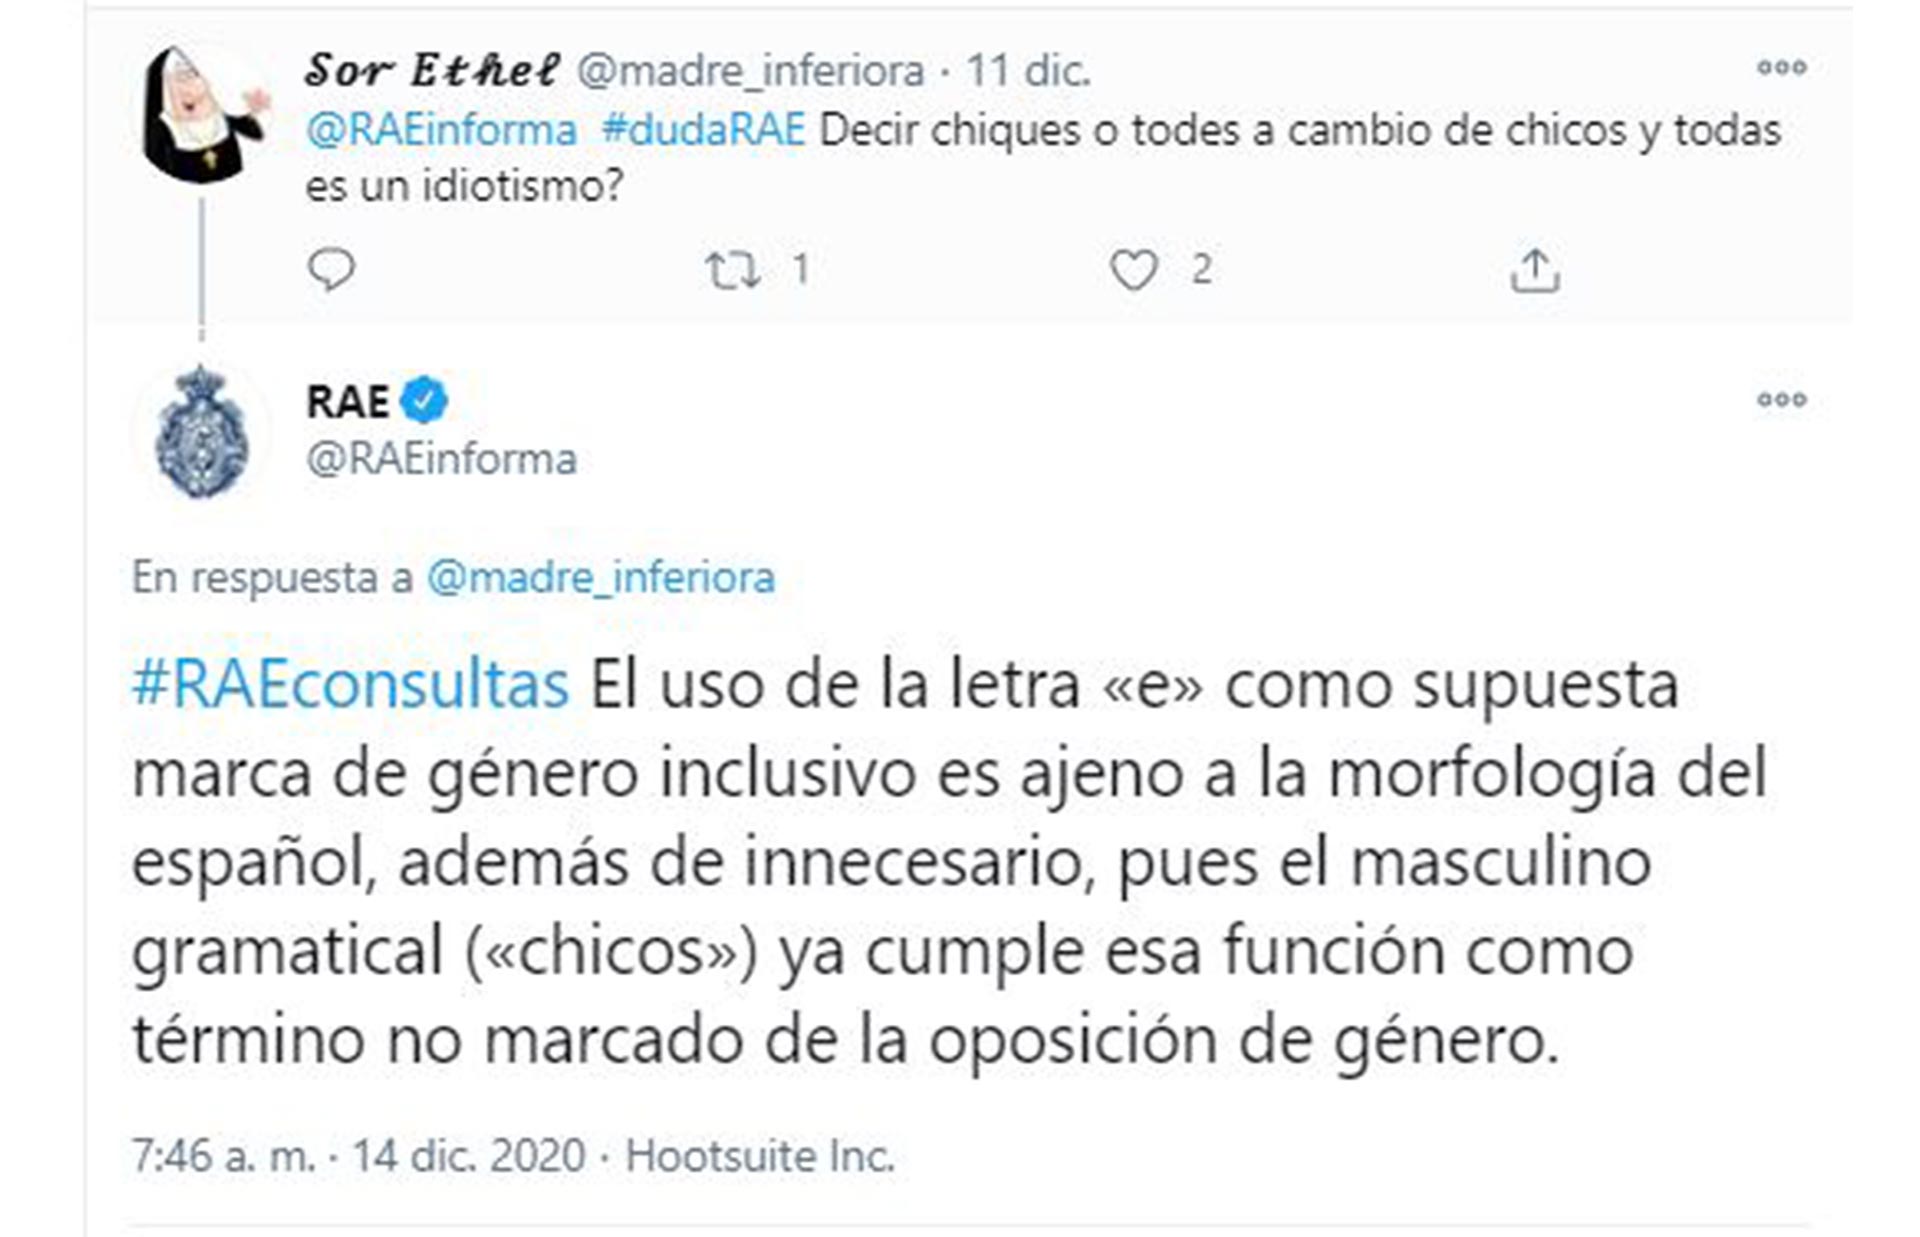 "El uso de la letra  E como supuesta marca de género inclusivo es ajeno a la morfología del español", dice la RAE